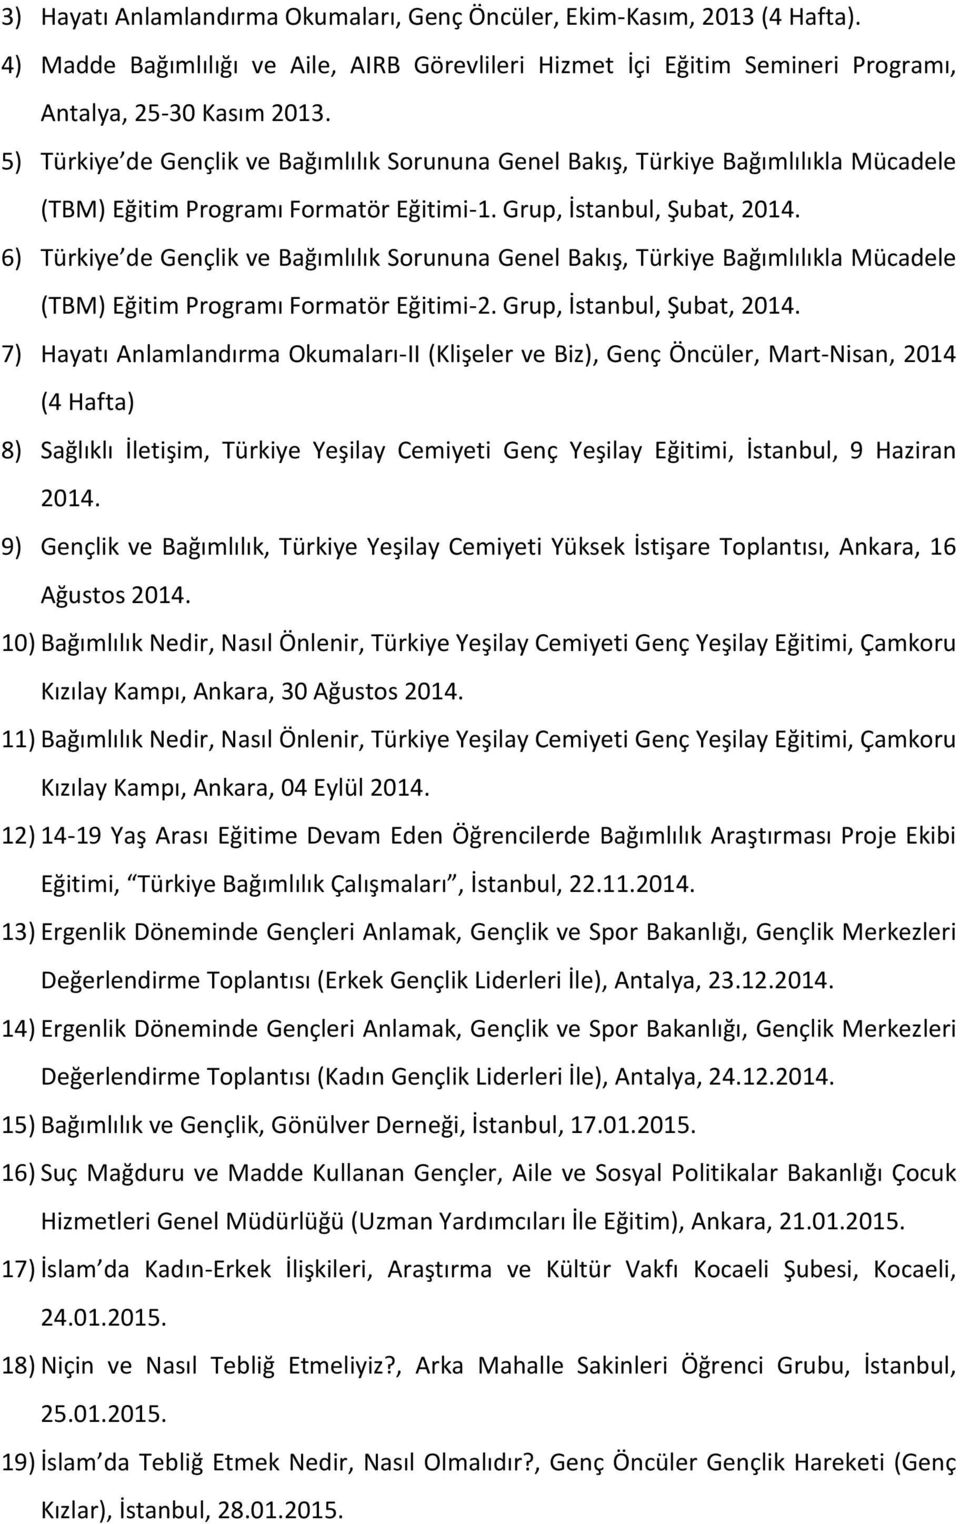 6) Türkiye de Gençlik ve Bağımlılık Sorununa Genel Bakış, Türkiye Bağımlılıkla Mücadele (TBM) Eğitim Programı Formatör Eğitimi-2. Grup, İstanbul, Şubat, 2014.